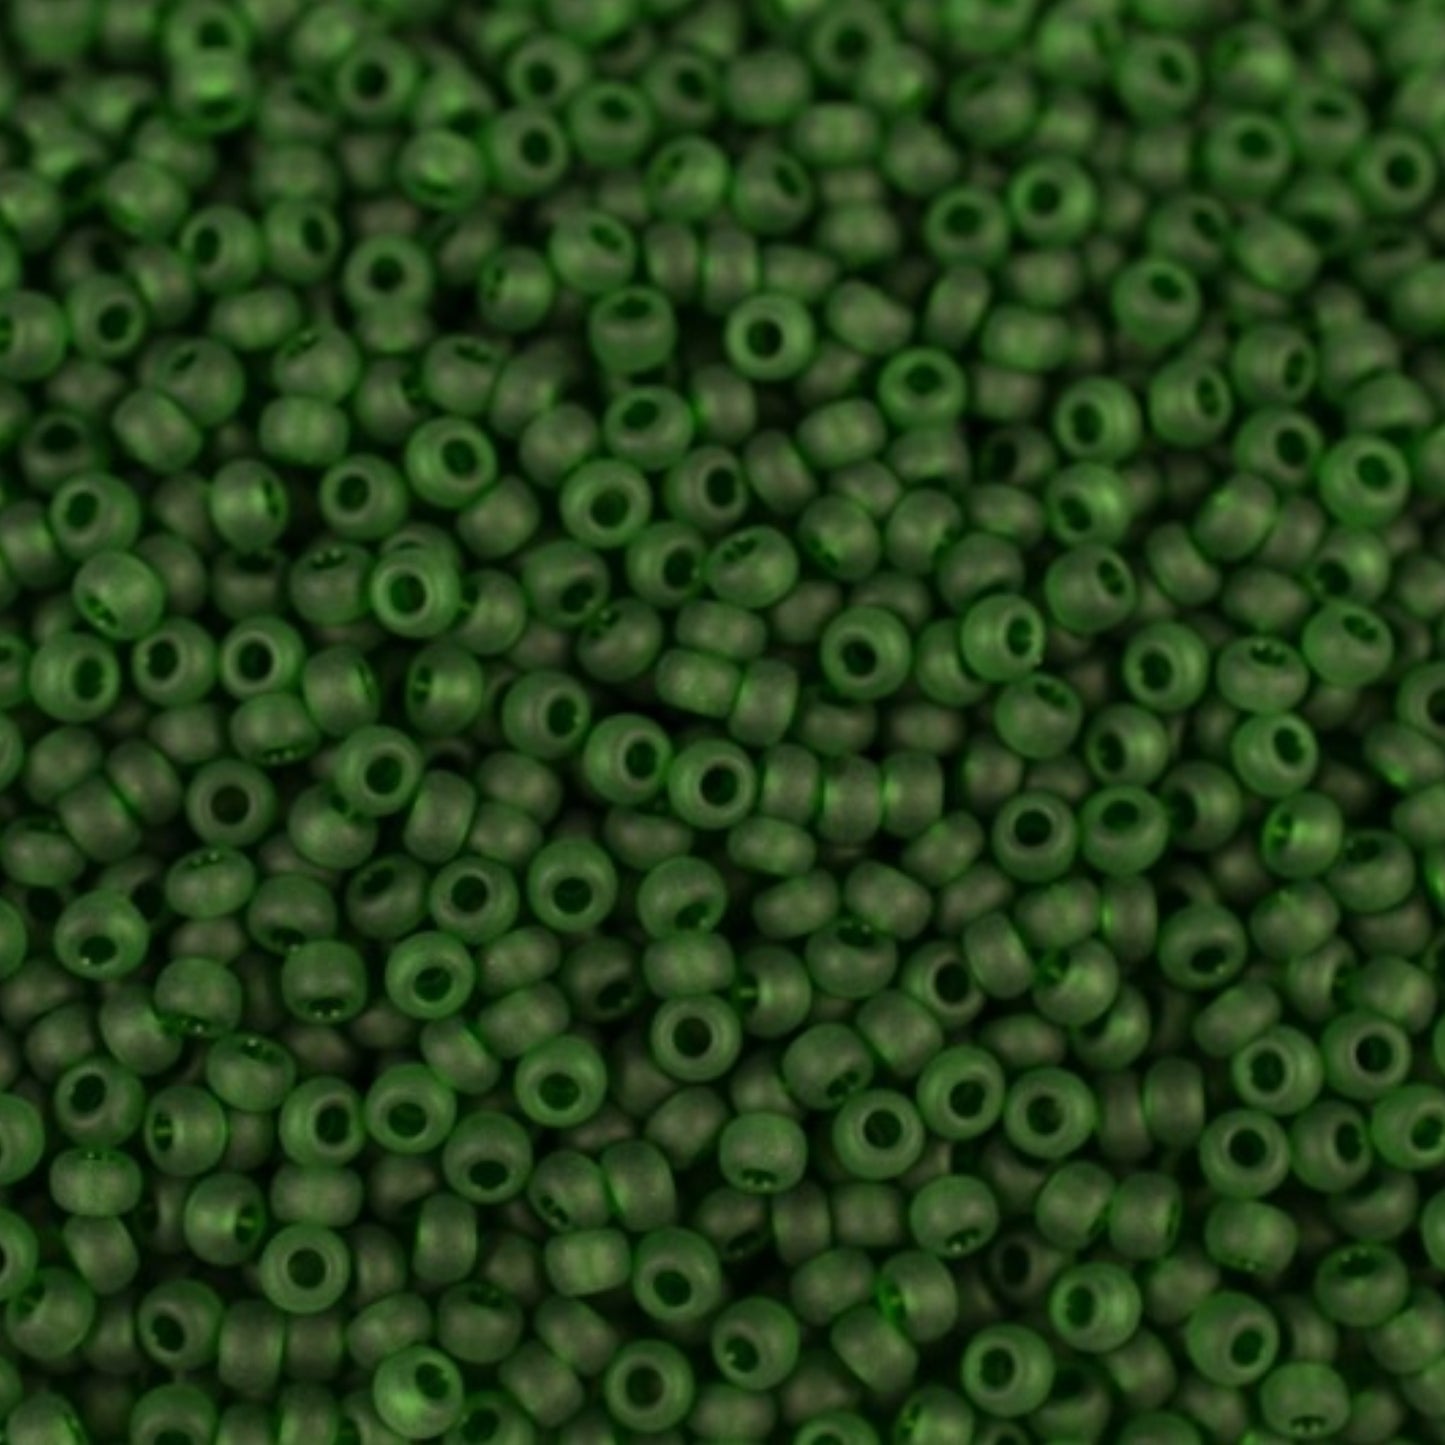 50120m Czech Seed Beads Preciosa Rocailles Transparent Matte